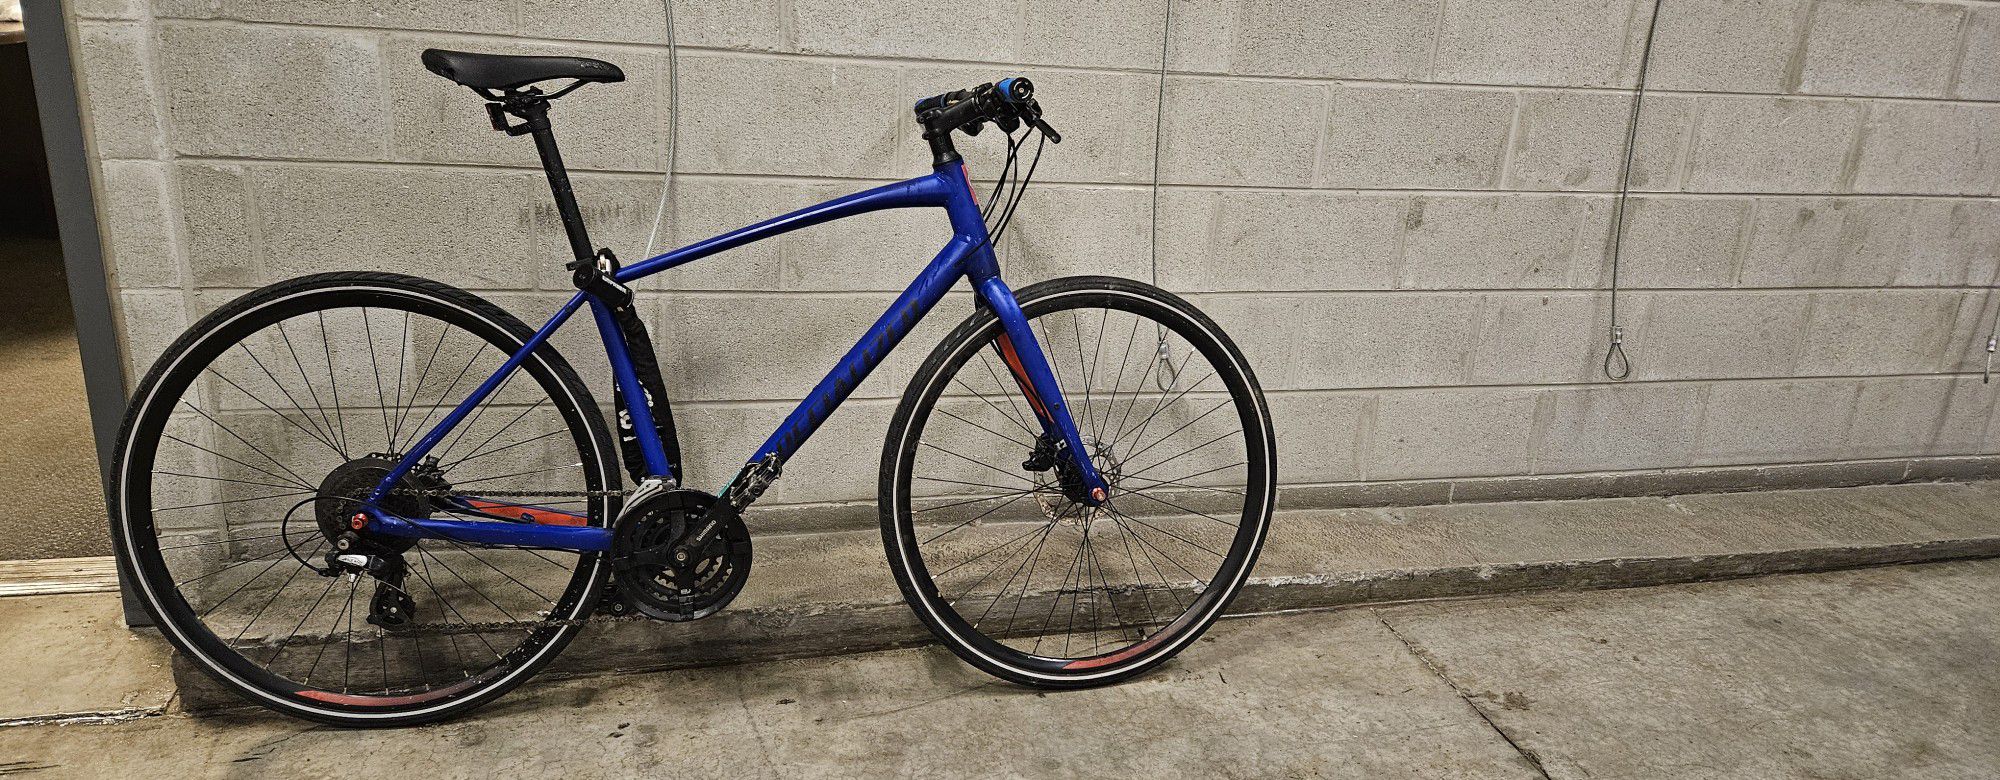 Specialized Sirrus Bike Medium Size 